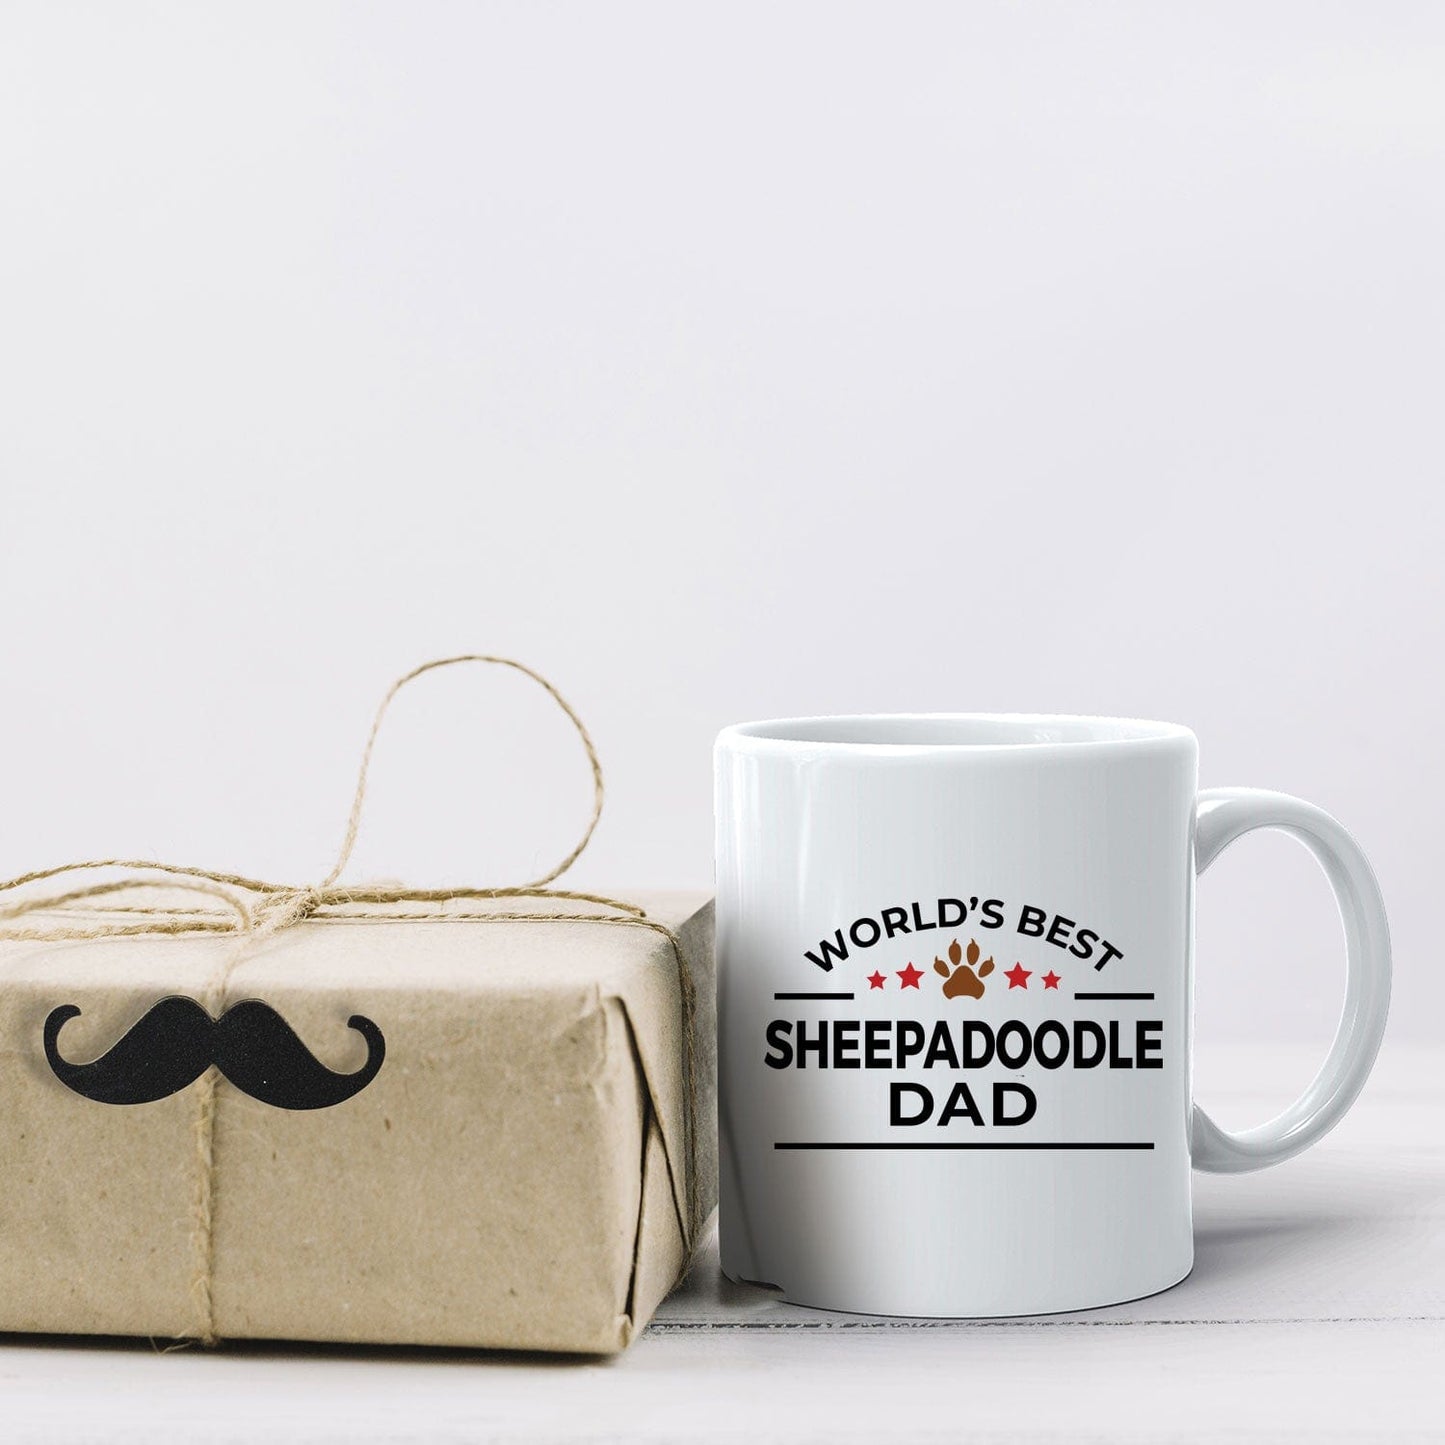 Sheepadoodle Dog Dad Coffee Mug